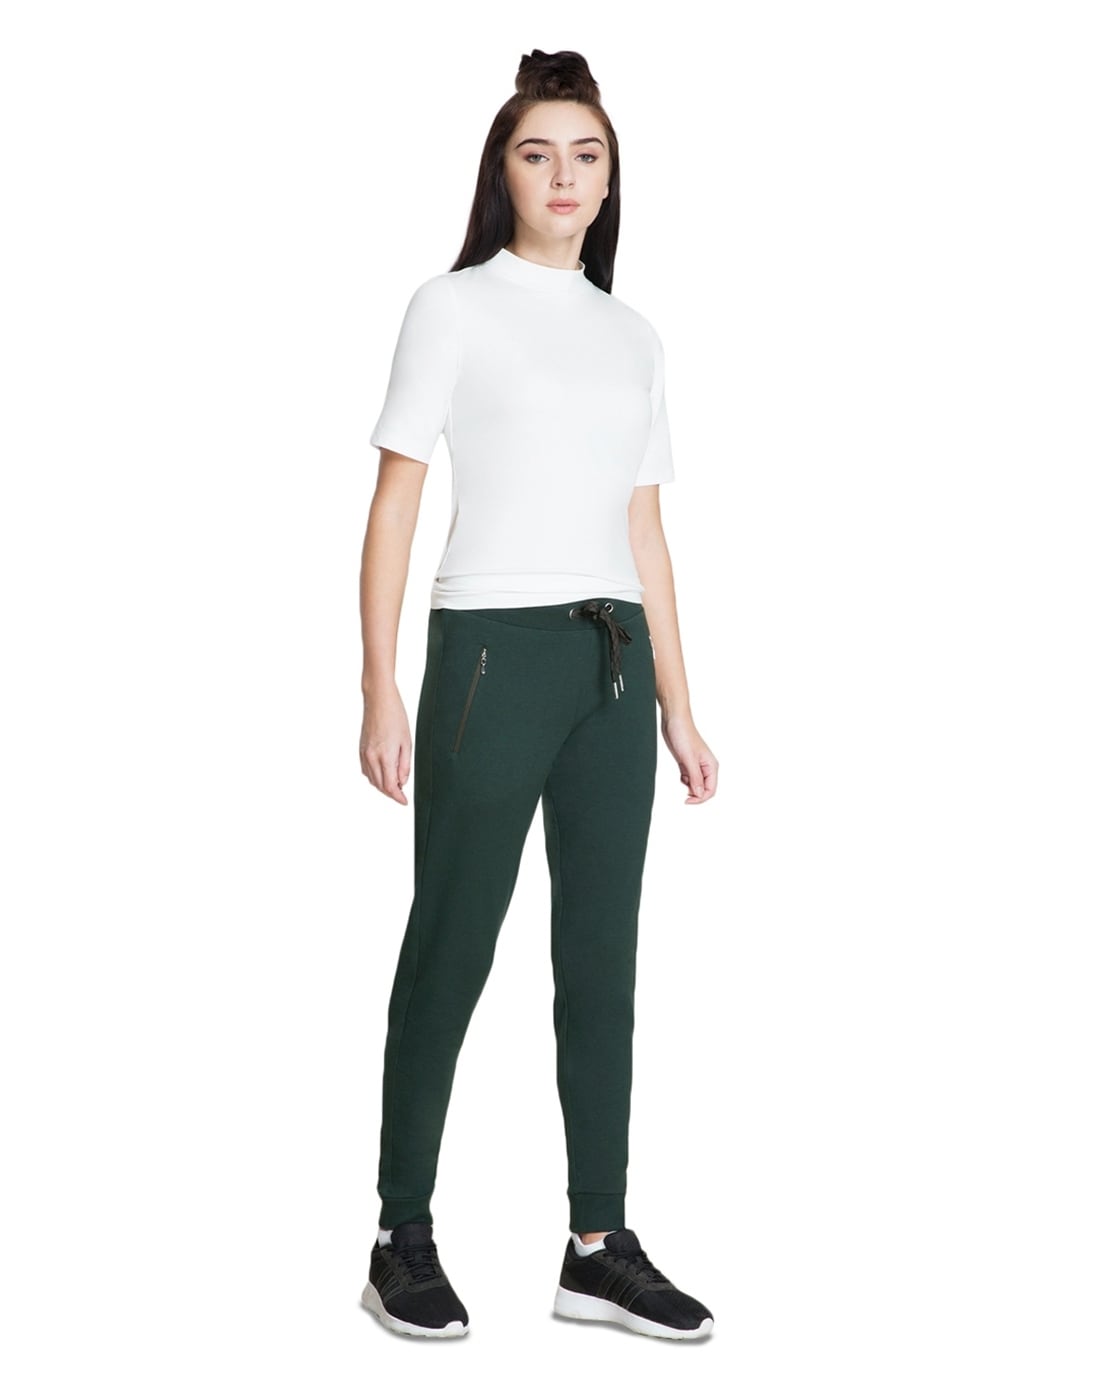 Buy Green Track Pants for Women by VAN HEUSEN Online